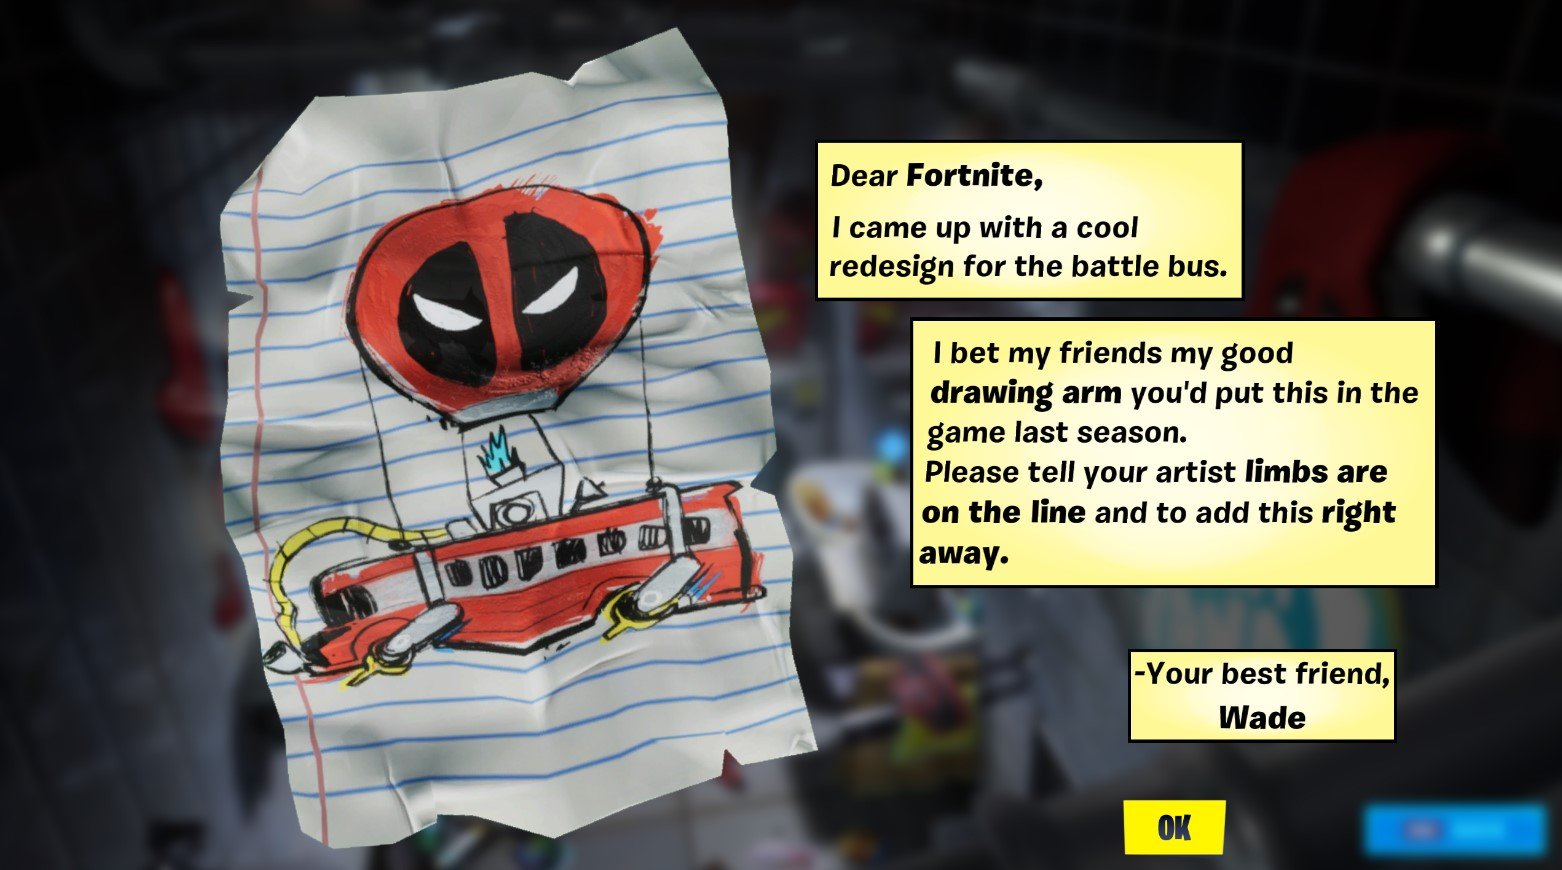 Deadpool's Letter